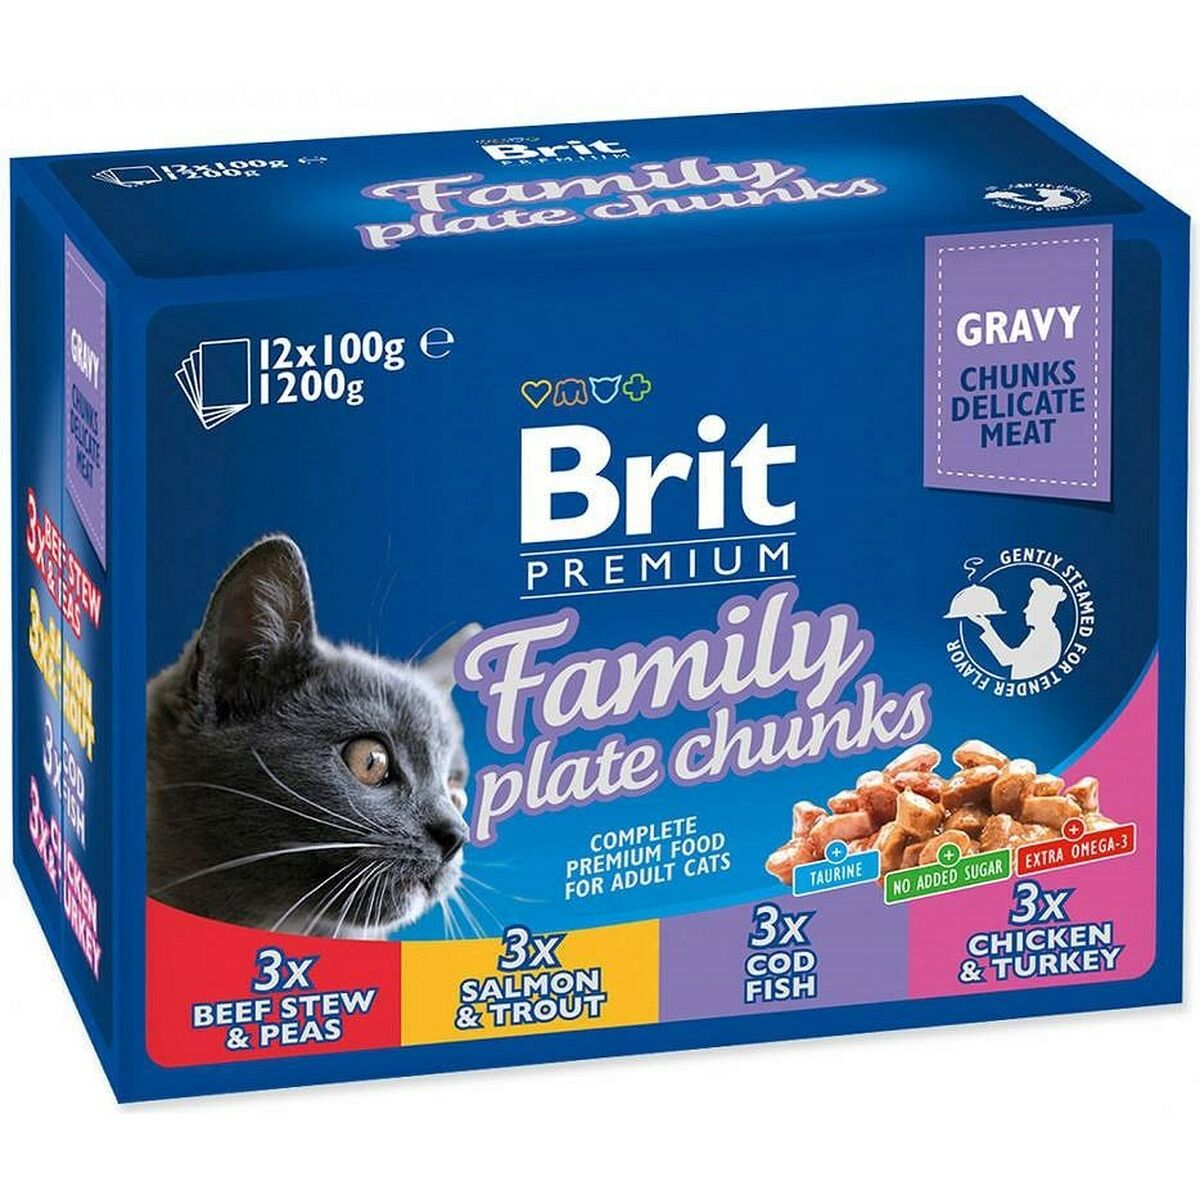 Cibo per gatti Brit Pouches Family Plate